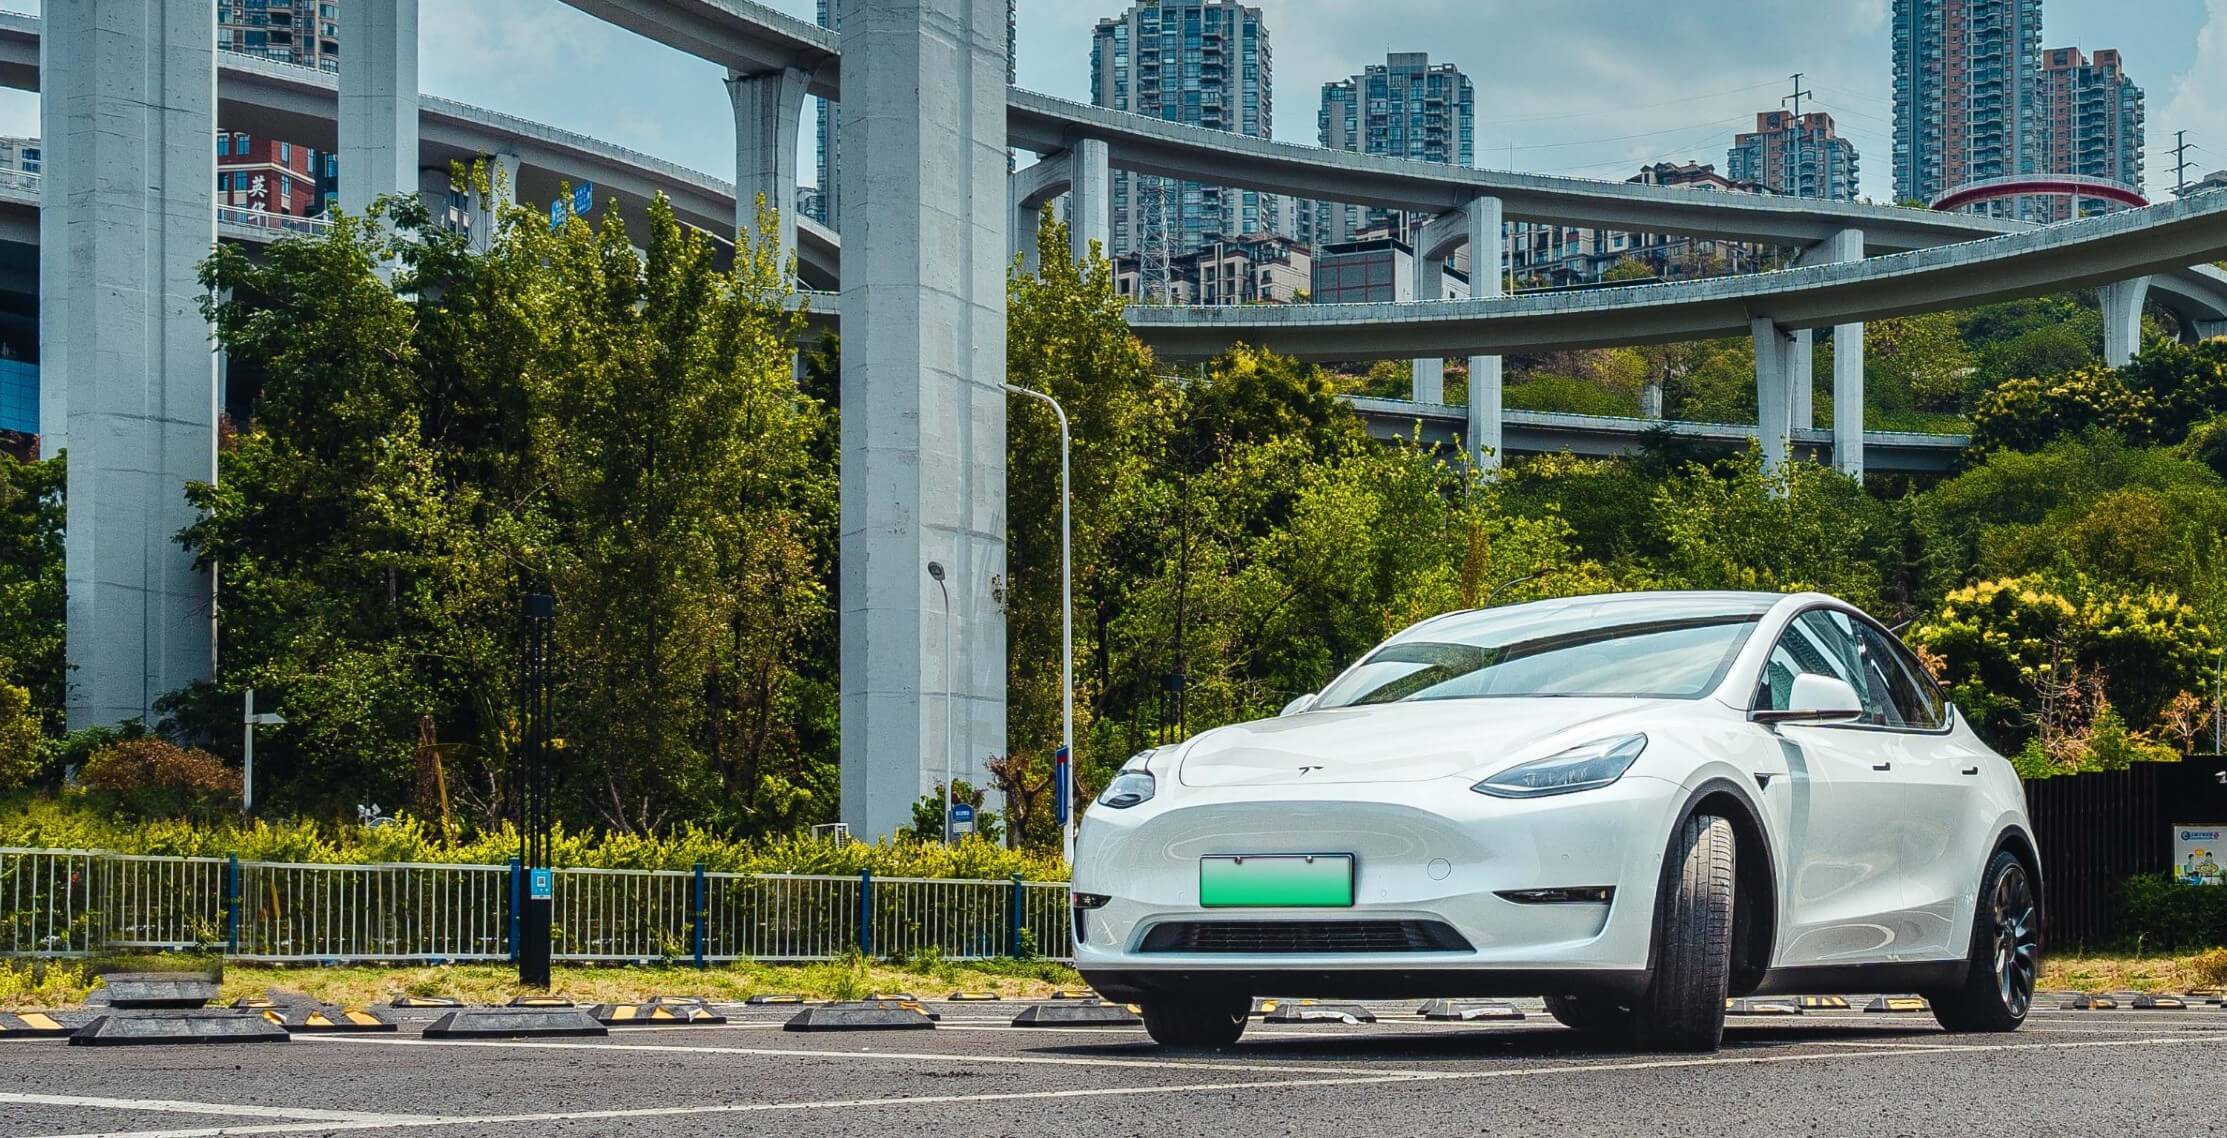 La guerra dei prezzi di Tesla potrebbe rimodellare l’industria automobilistica cinese e alcuni attori potrebbero non sopravvivere